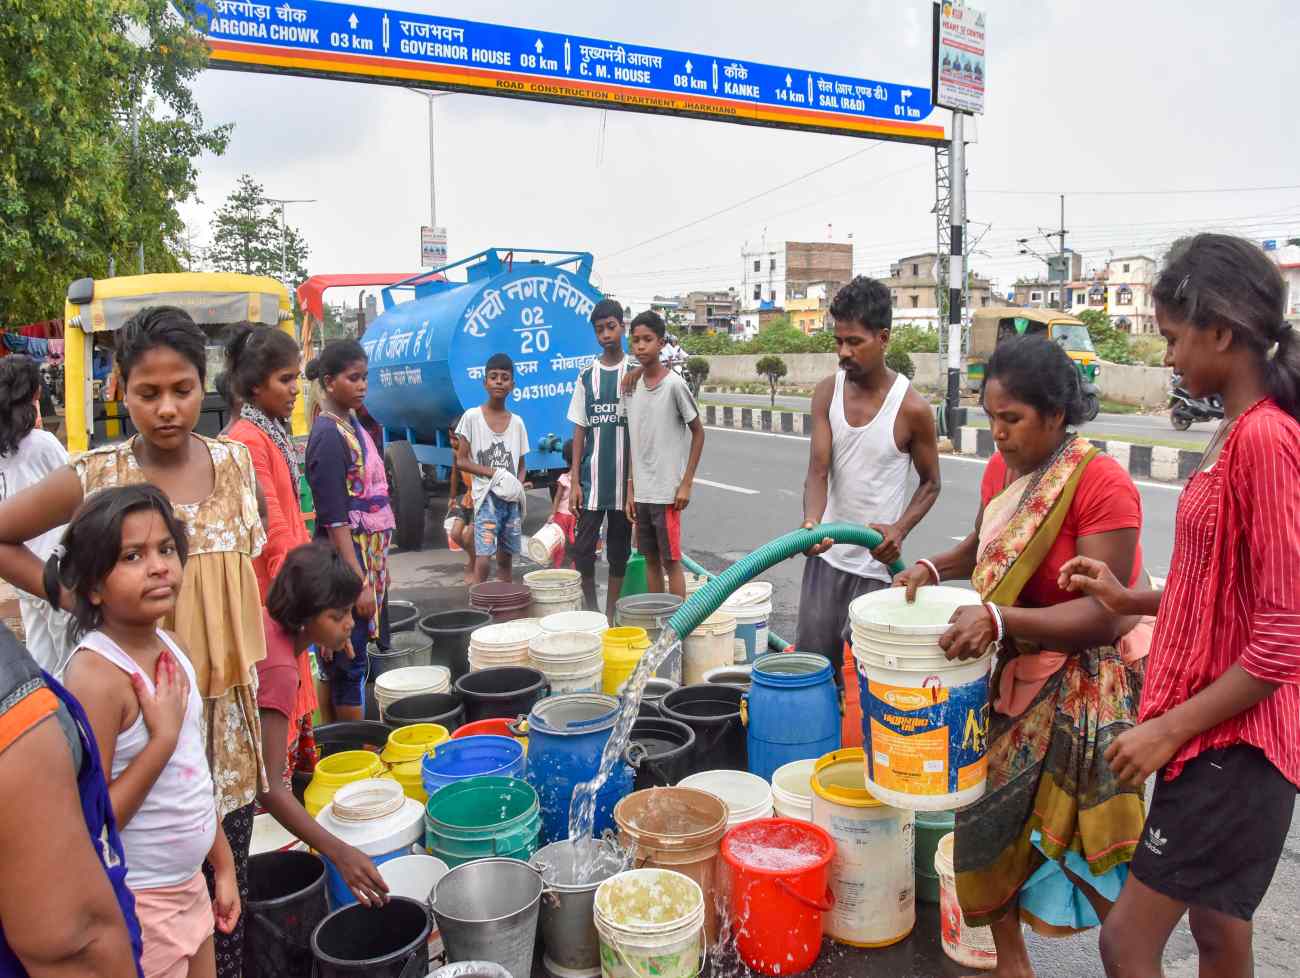 દિલ્હીમાં જળ સંકટ પર રાજનીતિ, AAPના 'પાણી સત્યાગ્રહ' પર ભાજપનો મોટો સવાલ?